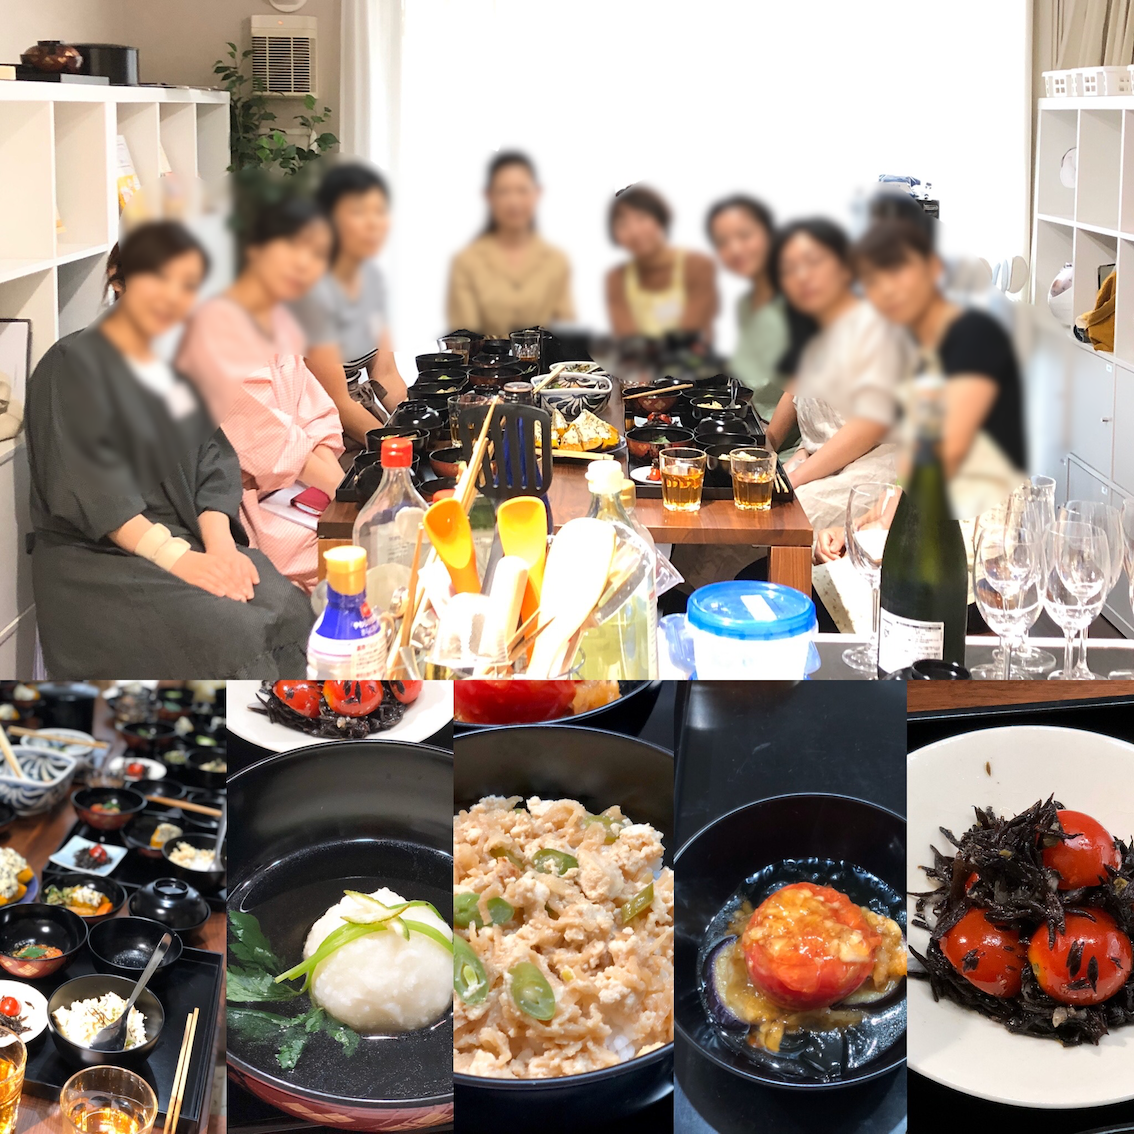 (和ごはん・食育研究会)-活動報告-2019年9月「茶懐石精進料理教室」を開催しました